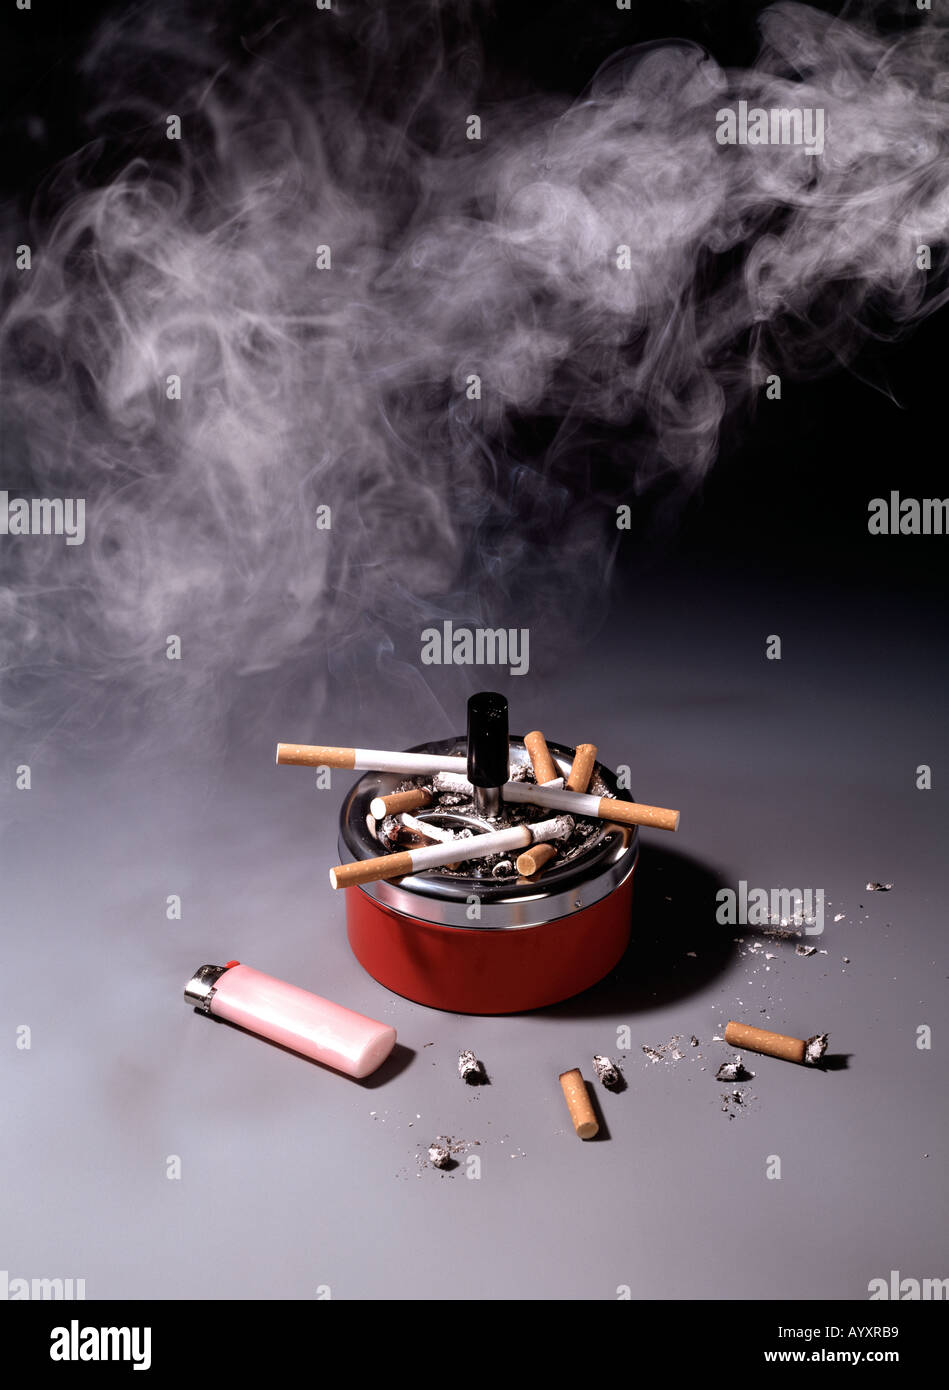 Gesundheit, Aschenbecher, Zigaretten, Feuerzeug, Stubs, Rauchen, Zigaretten  Stockfotografie - Alamy